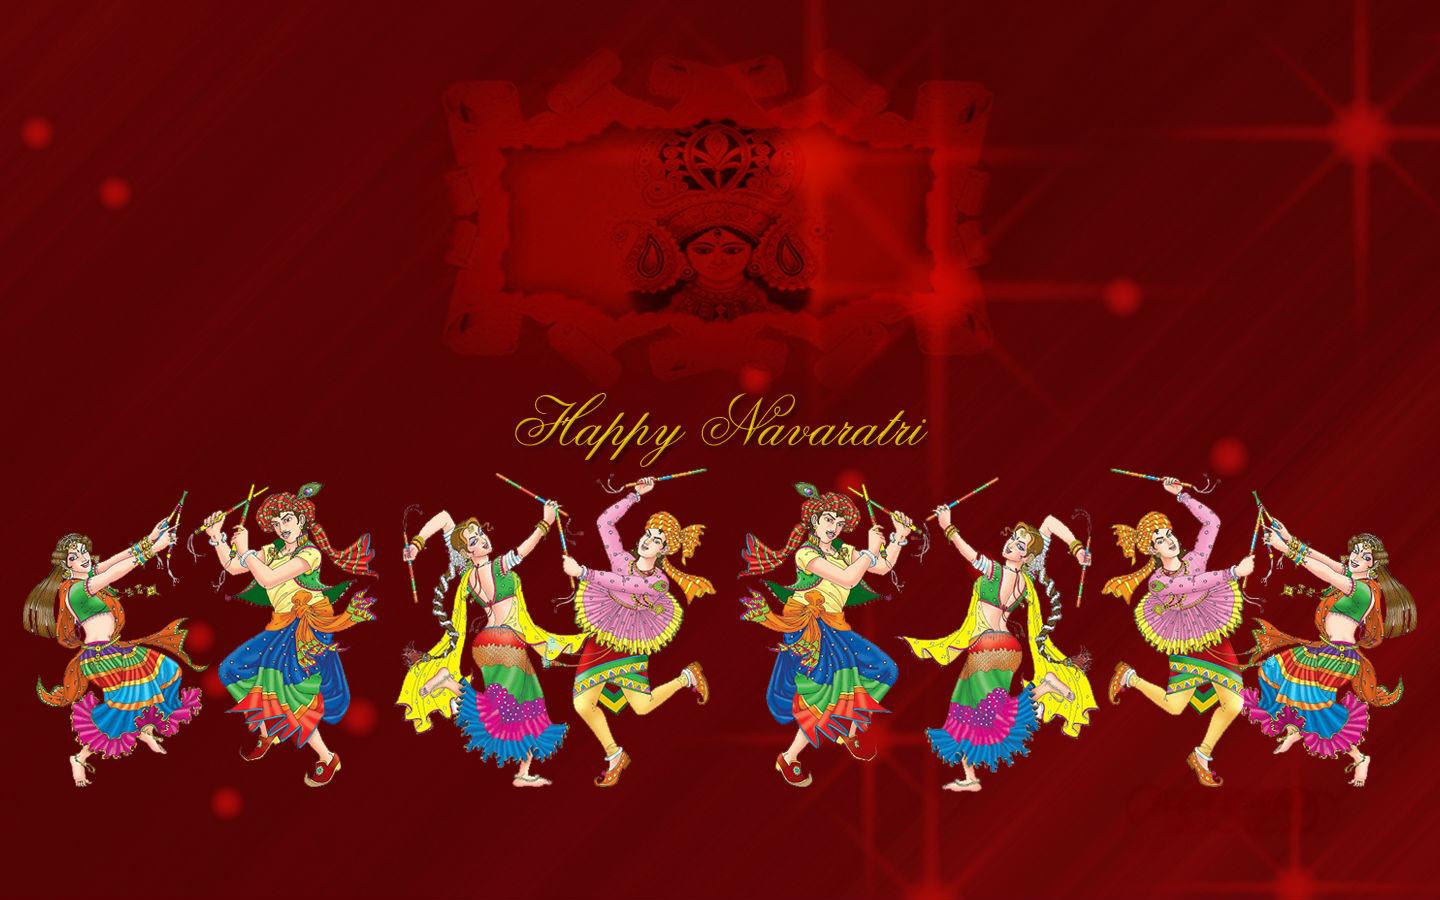 Navratri Maa Durga HD Image, Wallpaper, and Photo (Free Download)